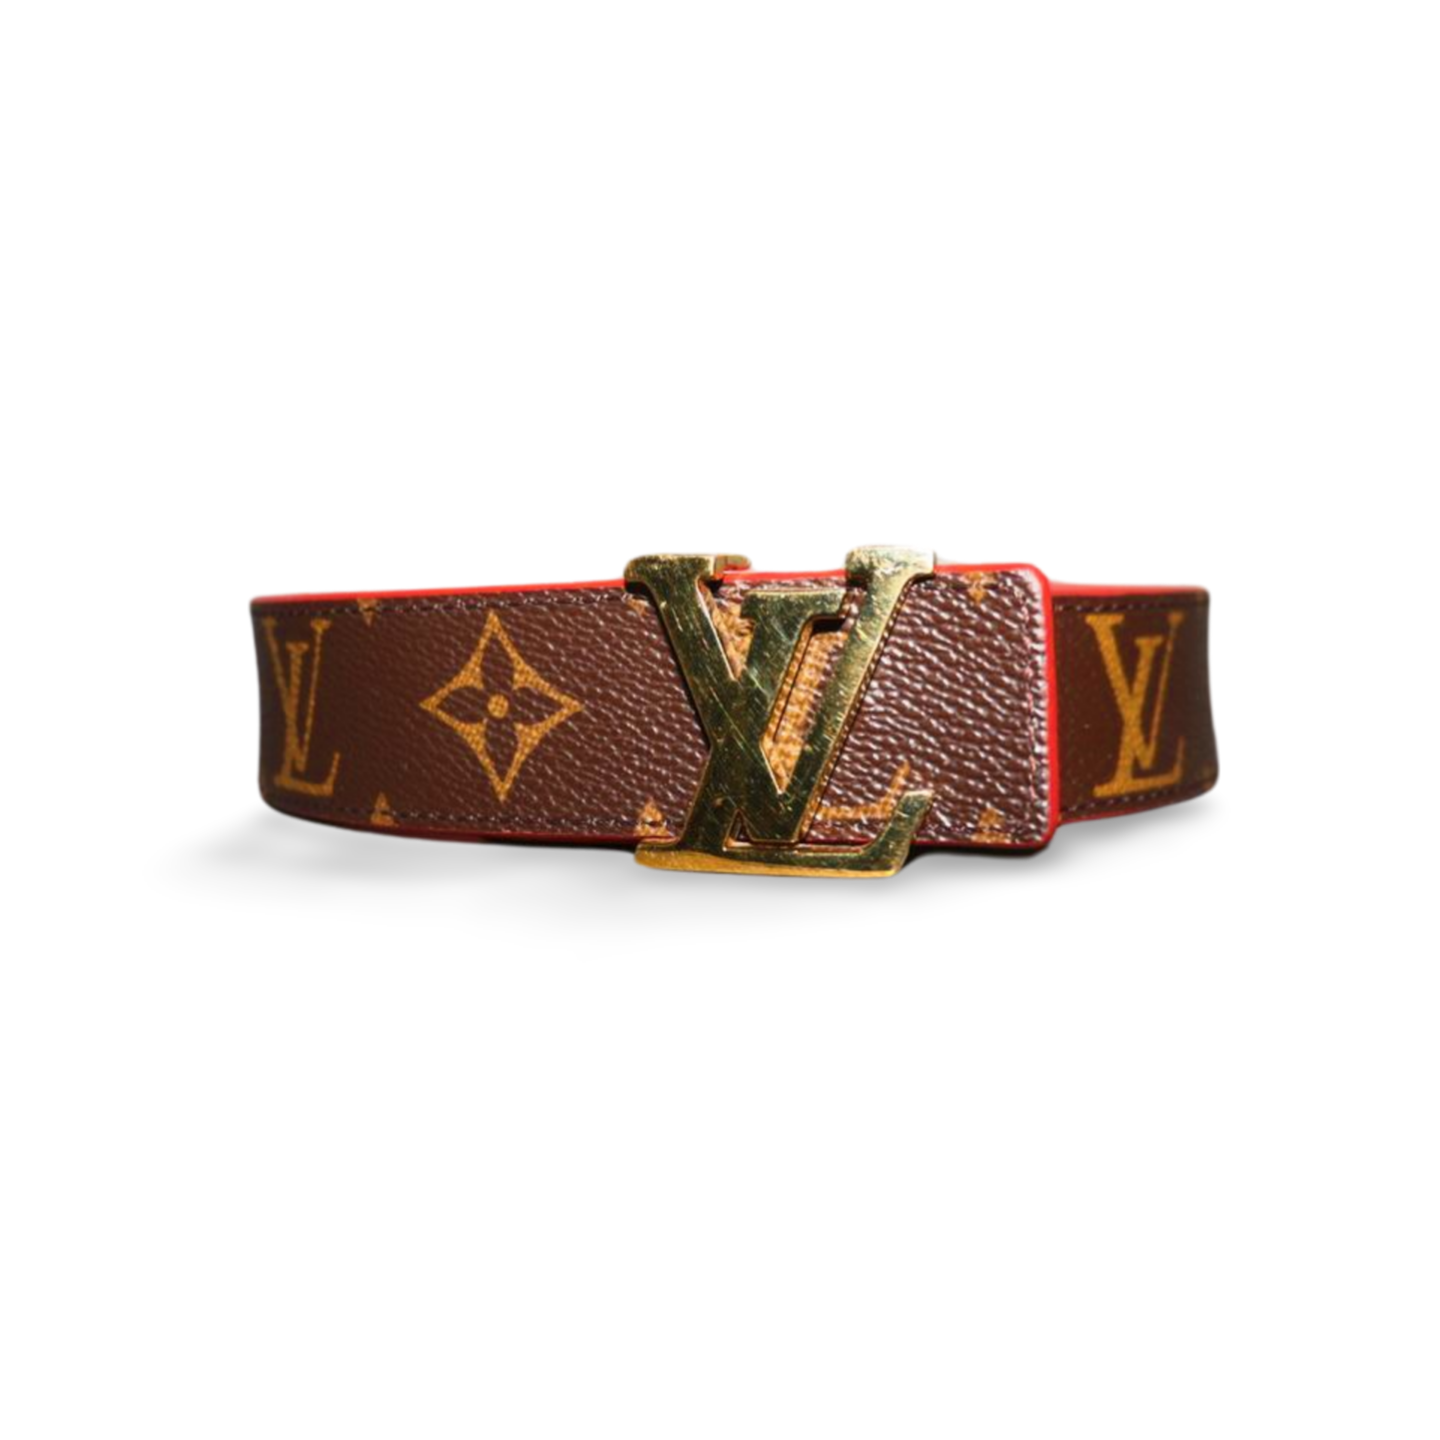 Authentic Louis Vuitton Reversible LV Iconic Buckle Belt Size 75 30 Monogram